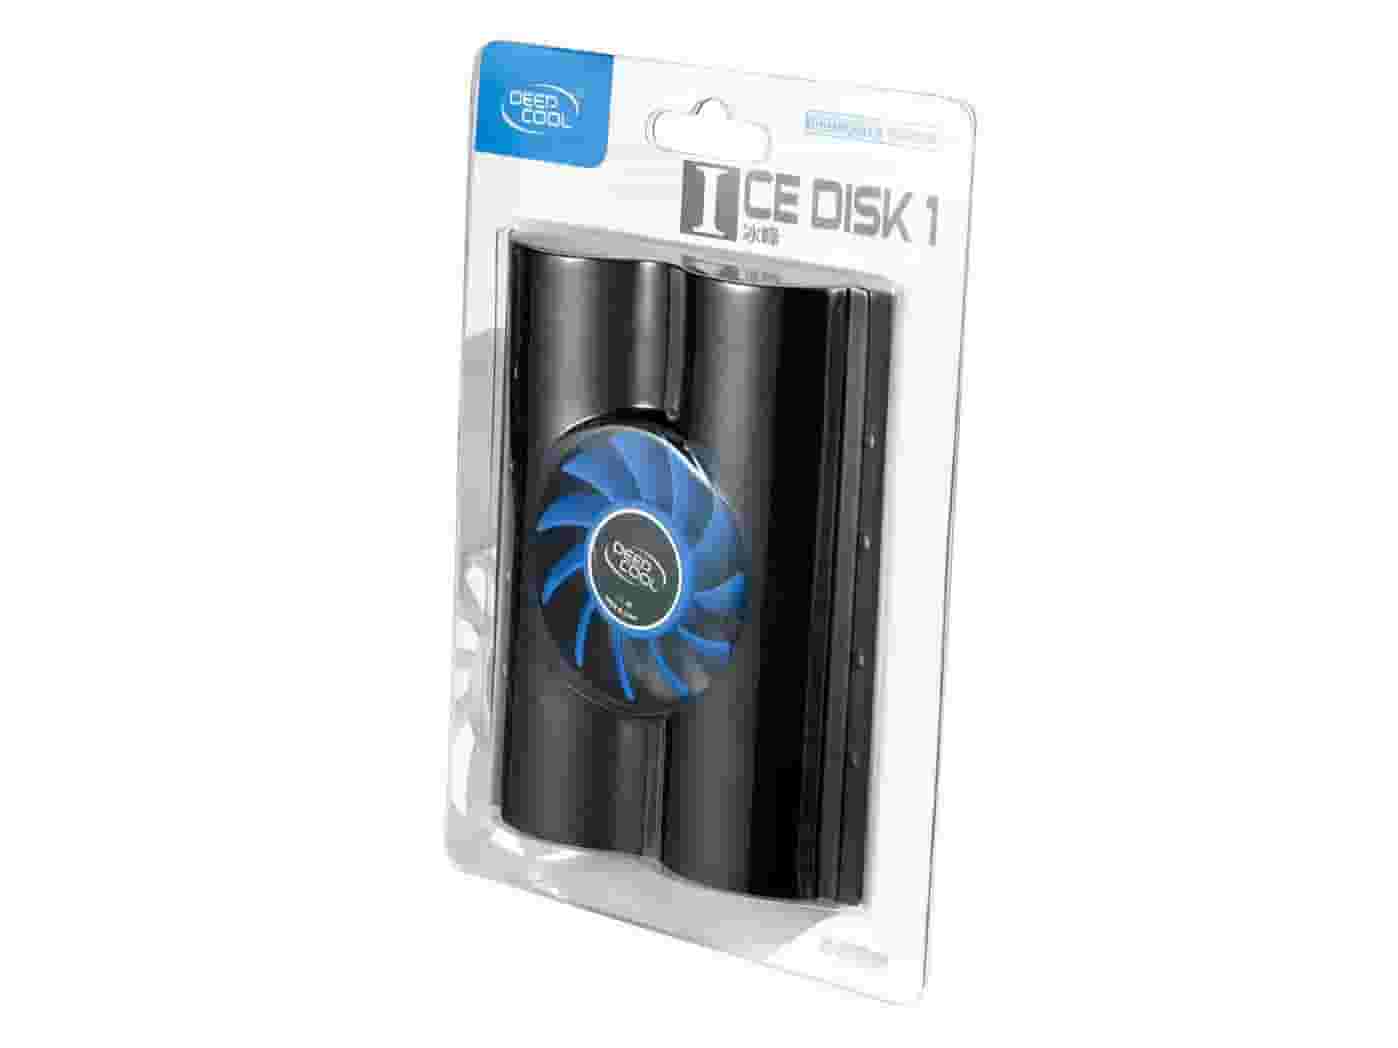 DeepCool Icedisk 1 Охлаждающая кулер для жесткого диска-3